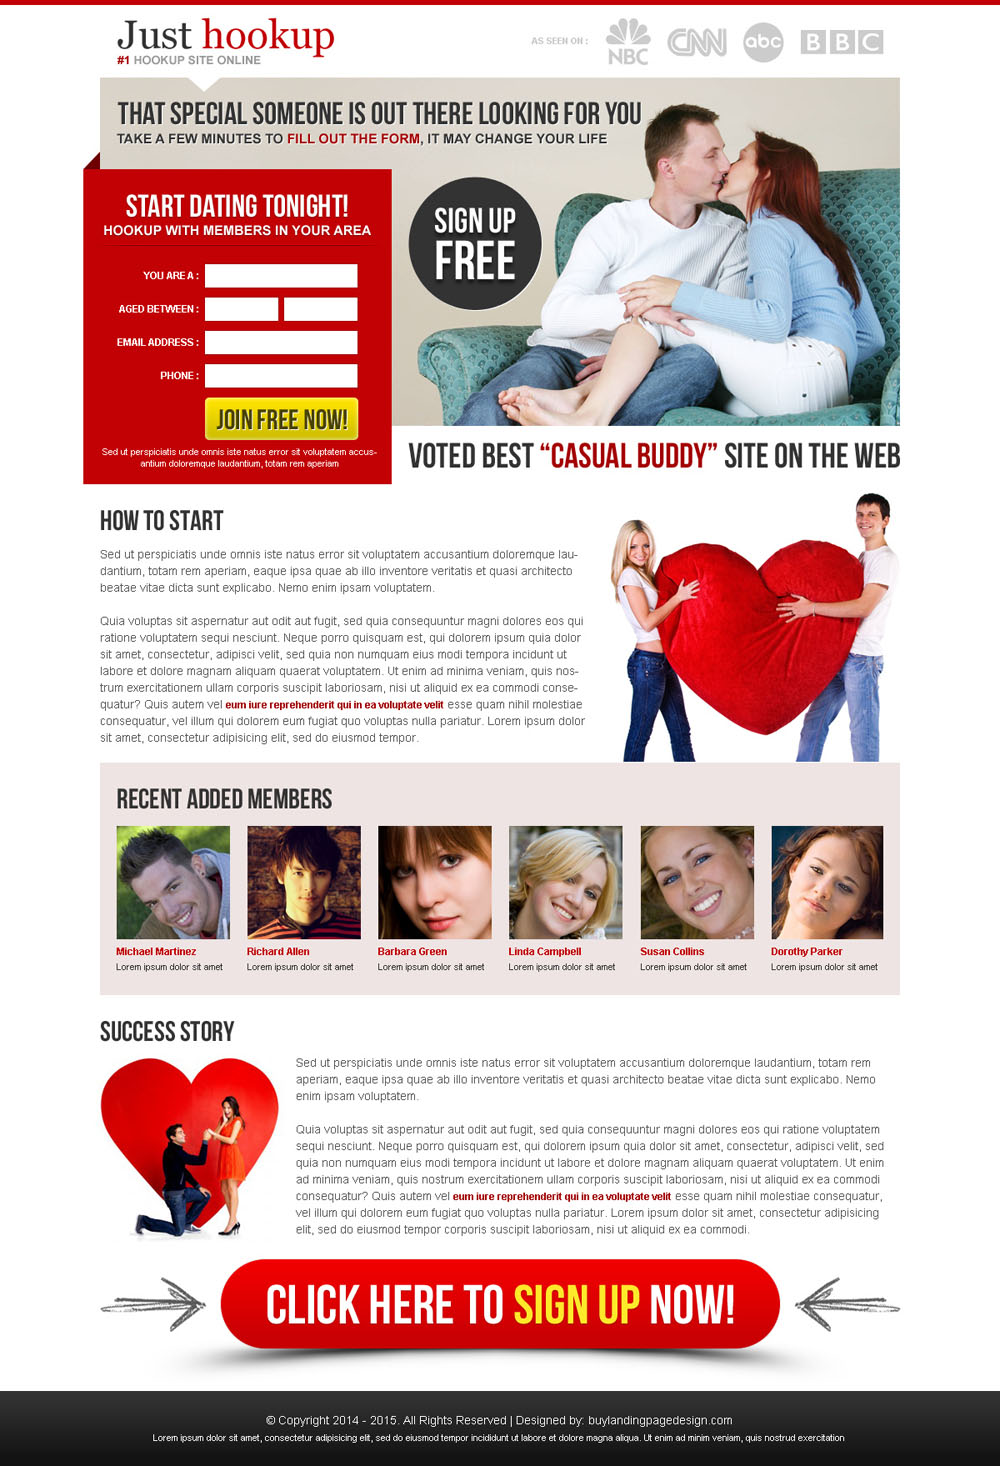 safe dating sites online